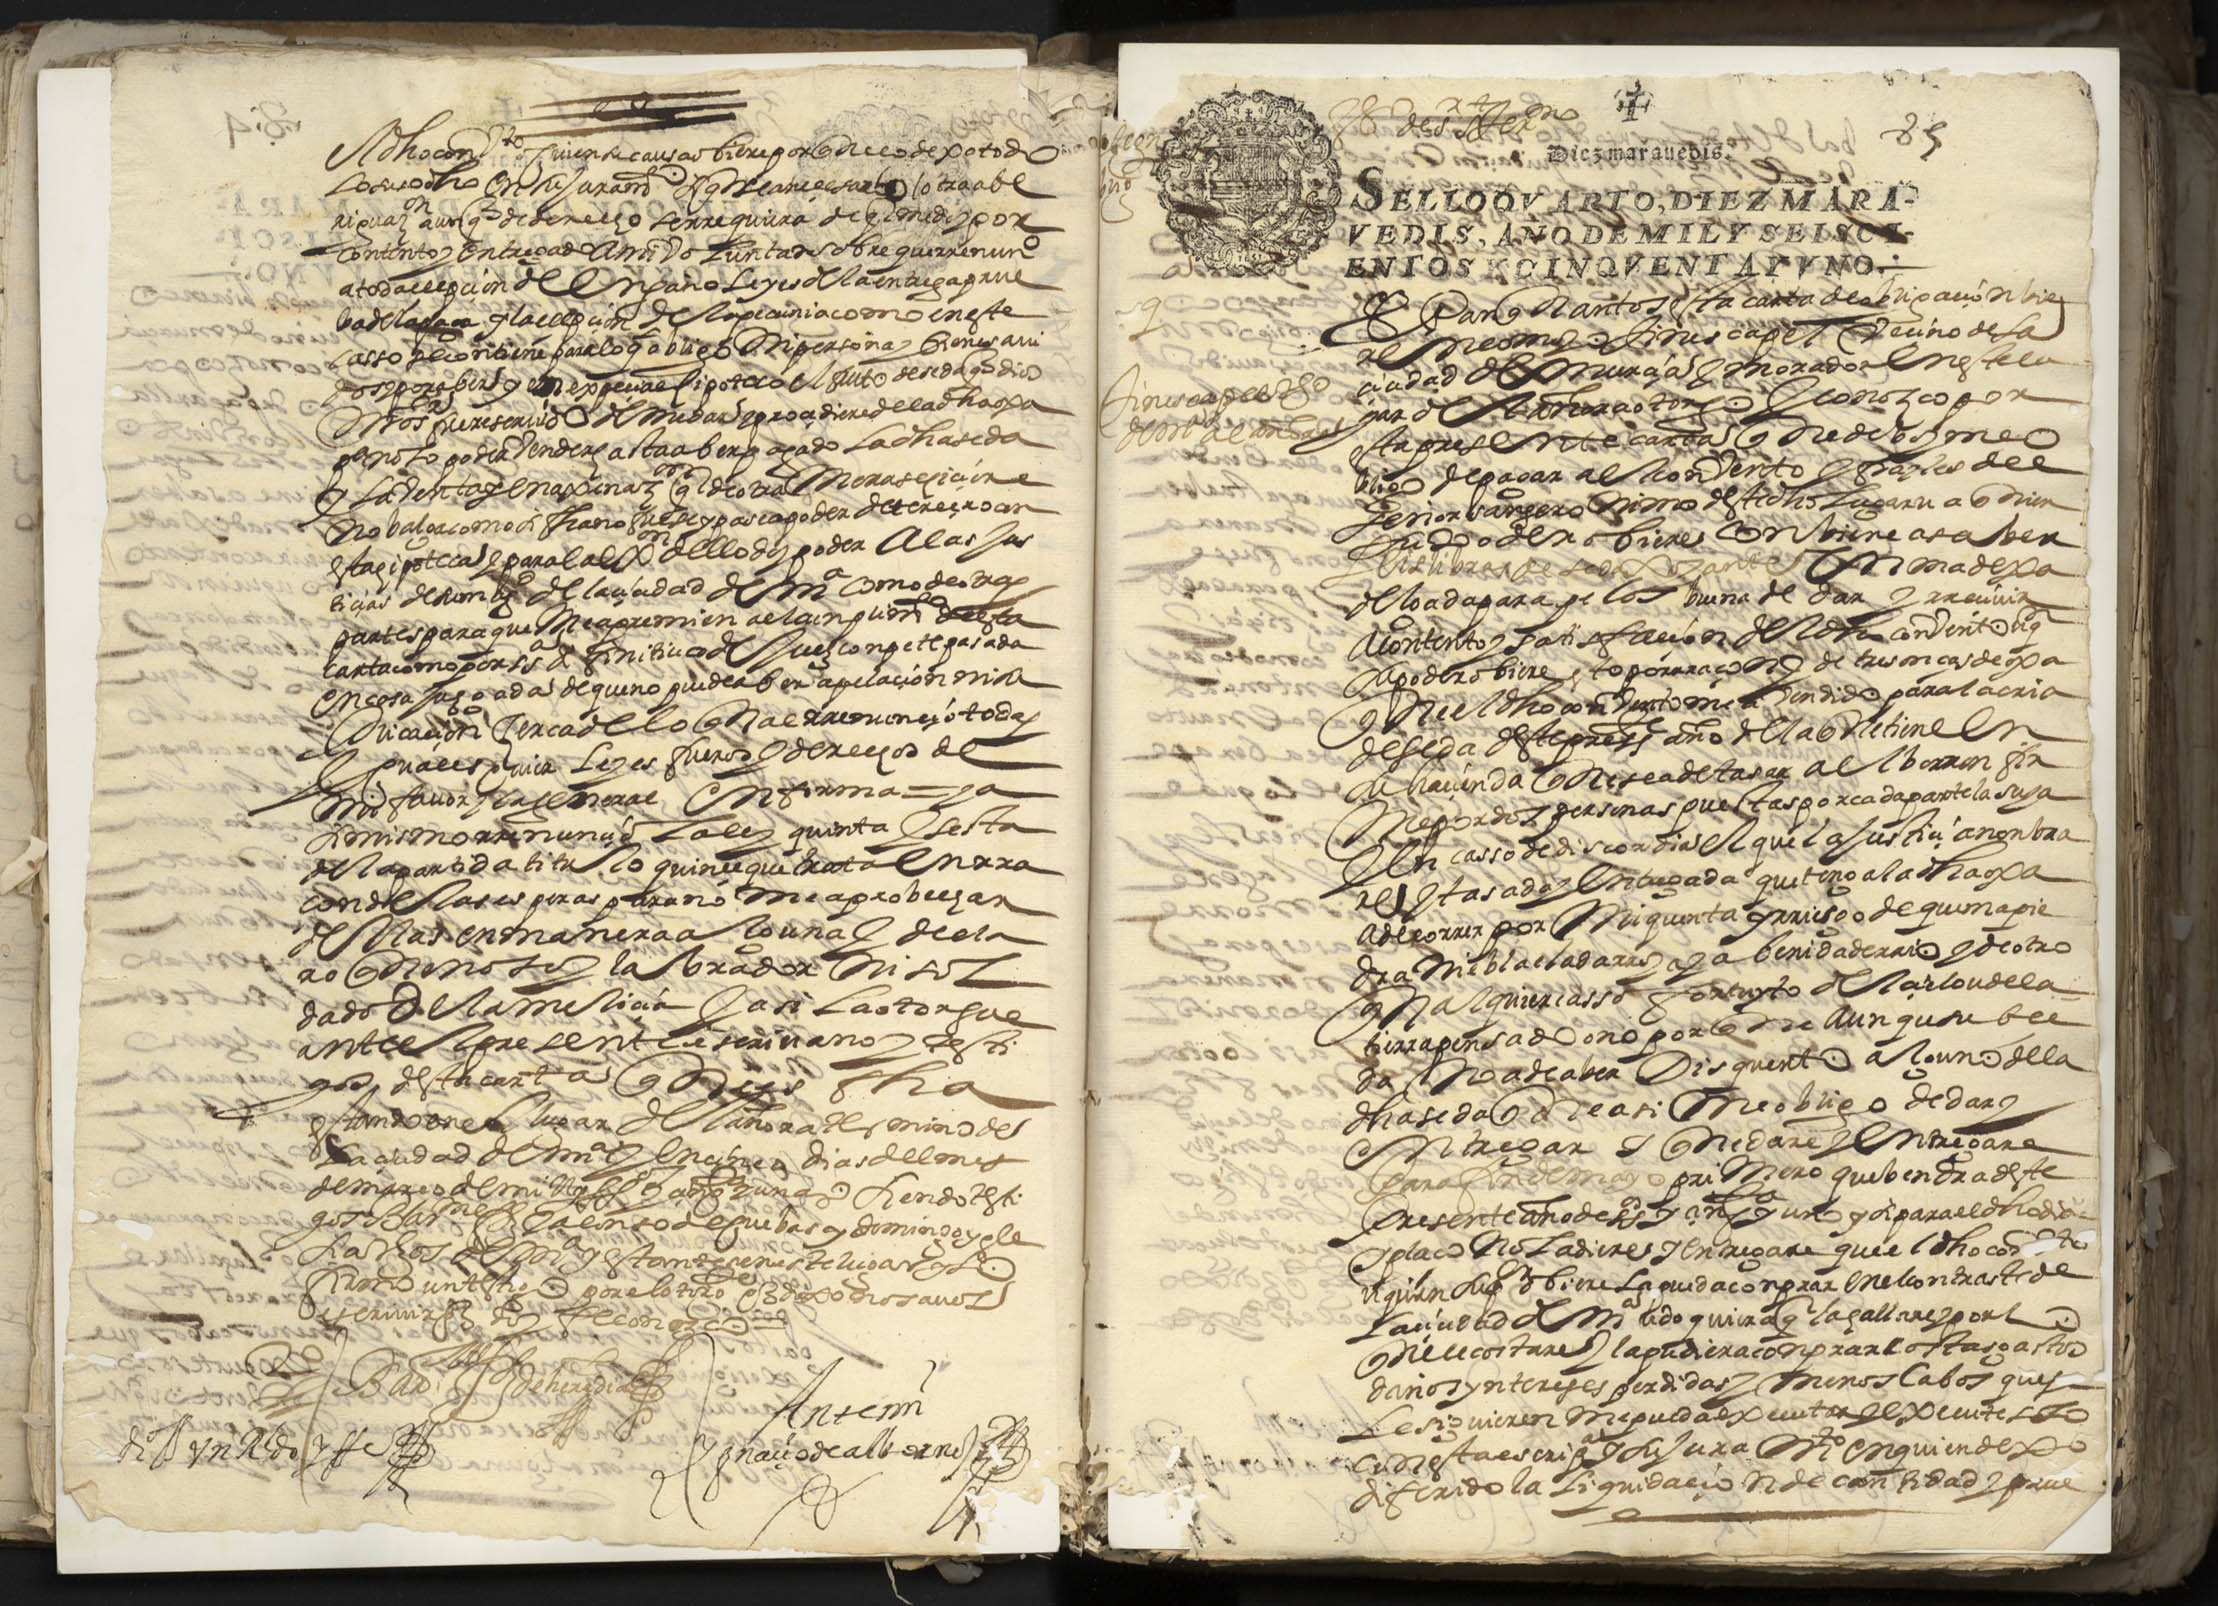 Registro de Ignacio de Albornoz y Velasco, Murcia de 1651.